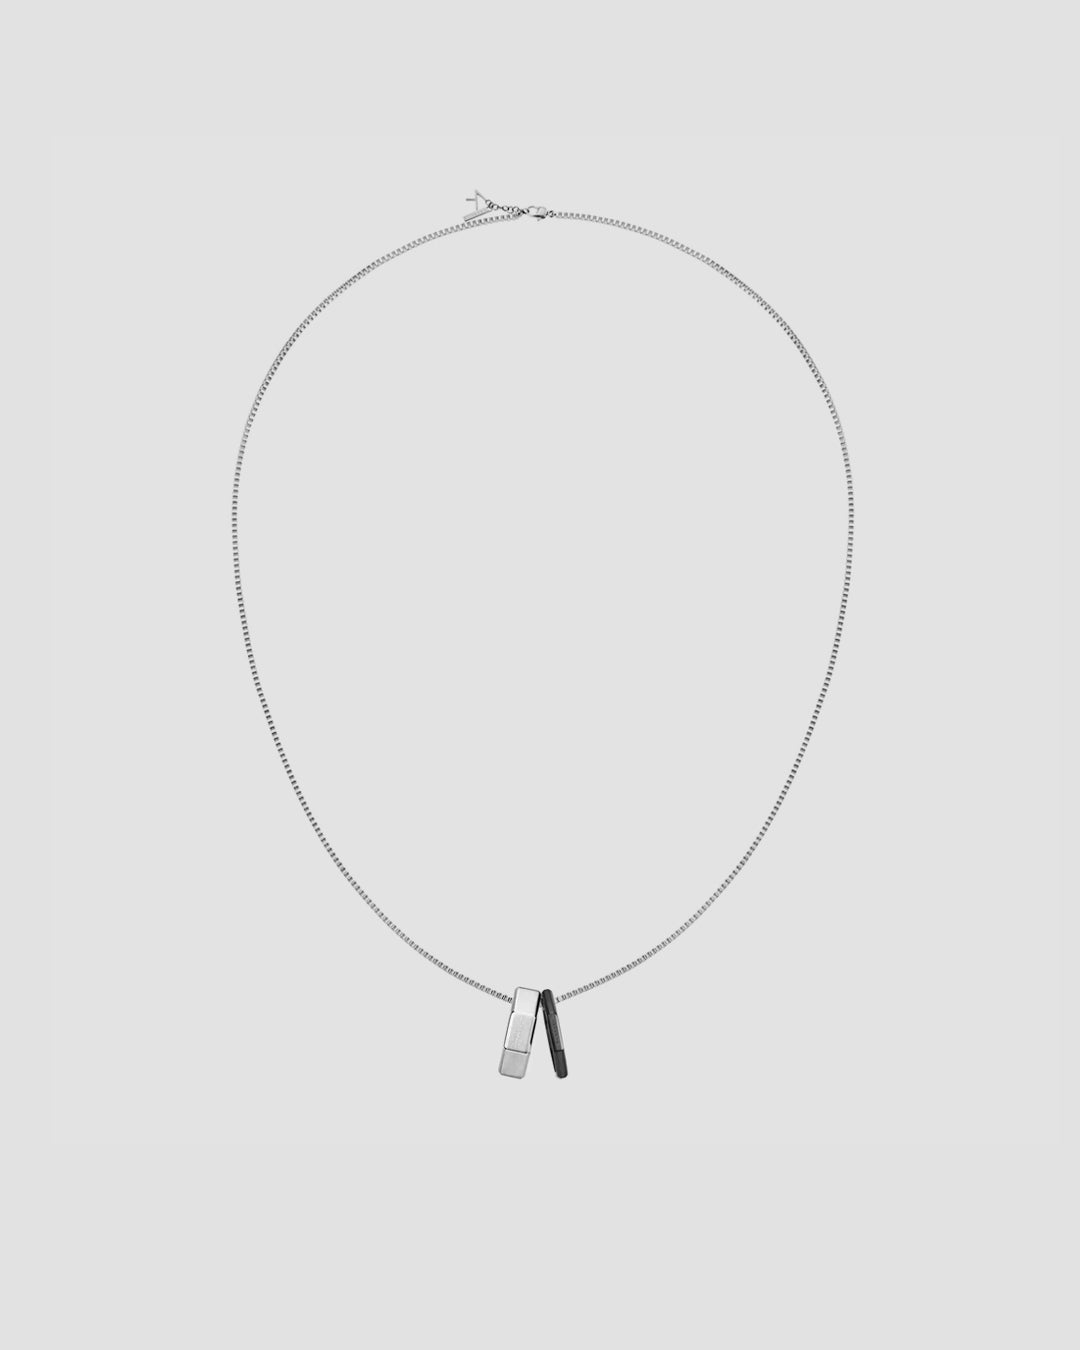 KLASSE 14 Double Okto Man Necklace - Silver / Black